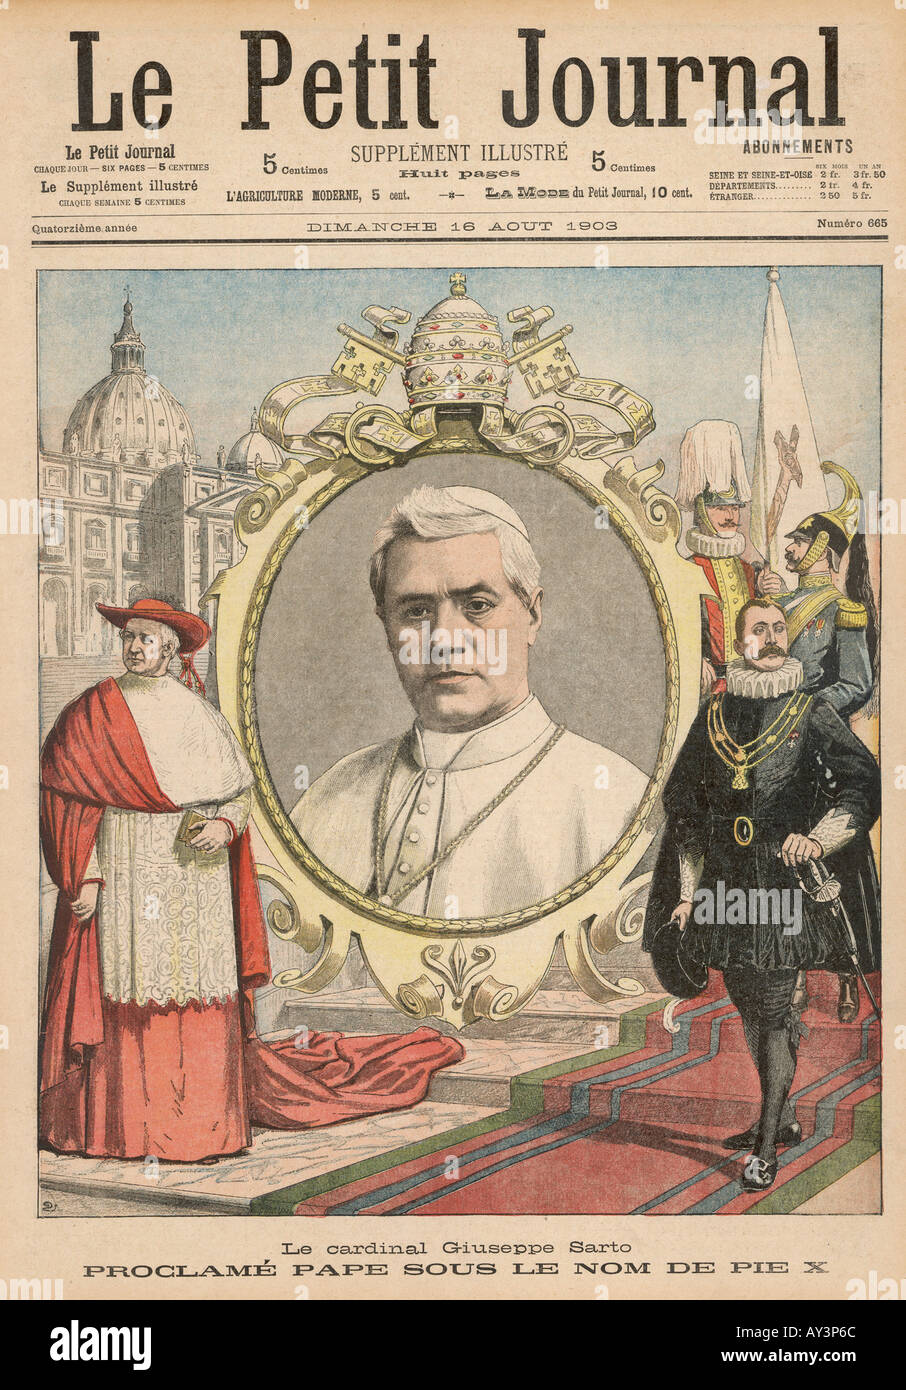 Pope Pius X Pet.jour. Stock Photo